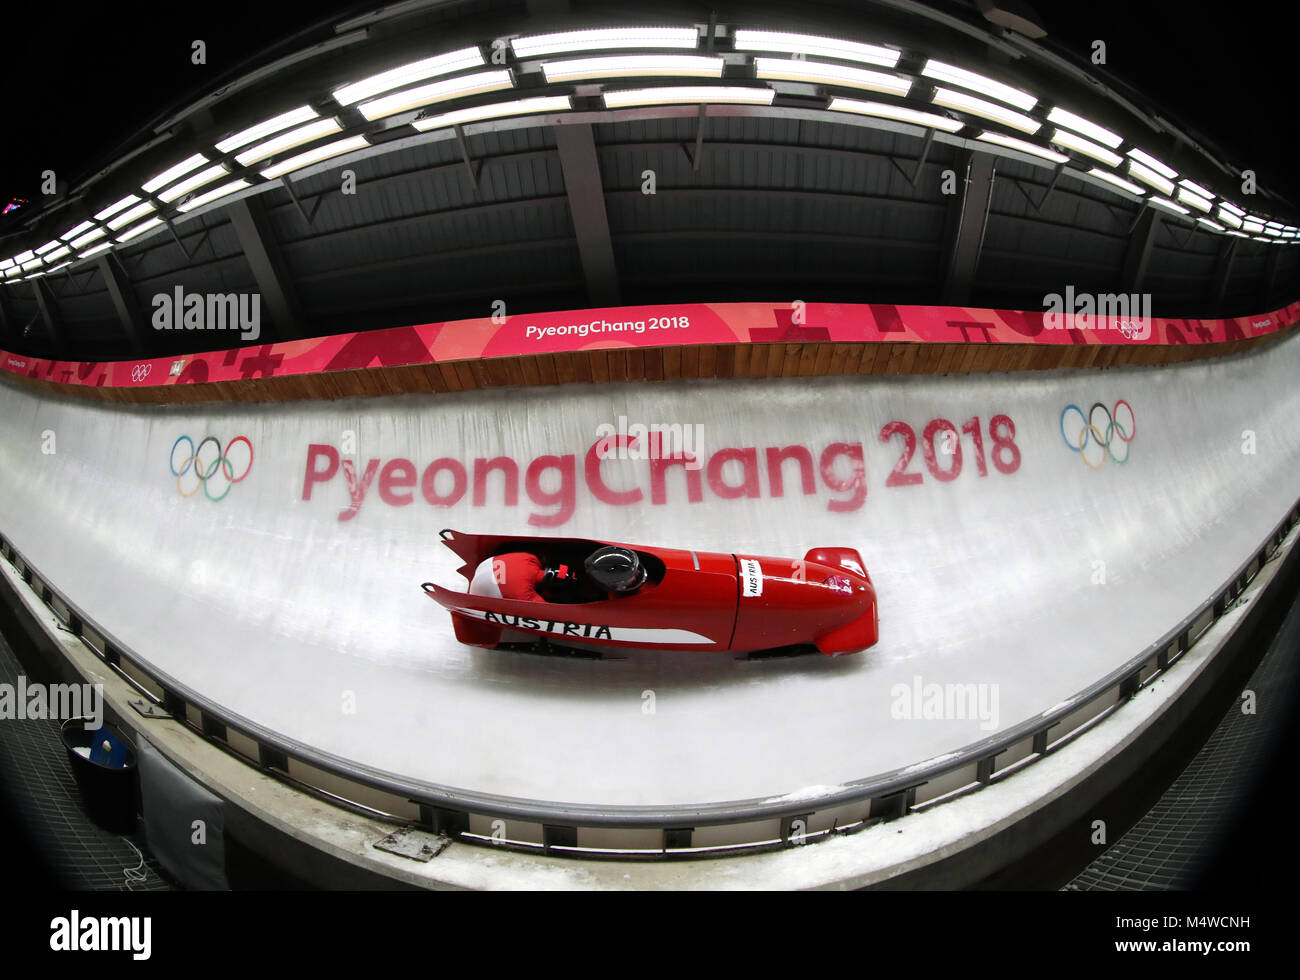 L'Autrichien Markus Treichl et Kilian Walch au cours de la première épreuve de l'homme deux Bobsleigh au Centre des sports de glisse olympique au jour 9 des Jeux Olympiques d'hiver 2018 de PyeongChang en Corée du Sud. Banque D'Images